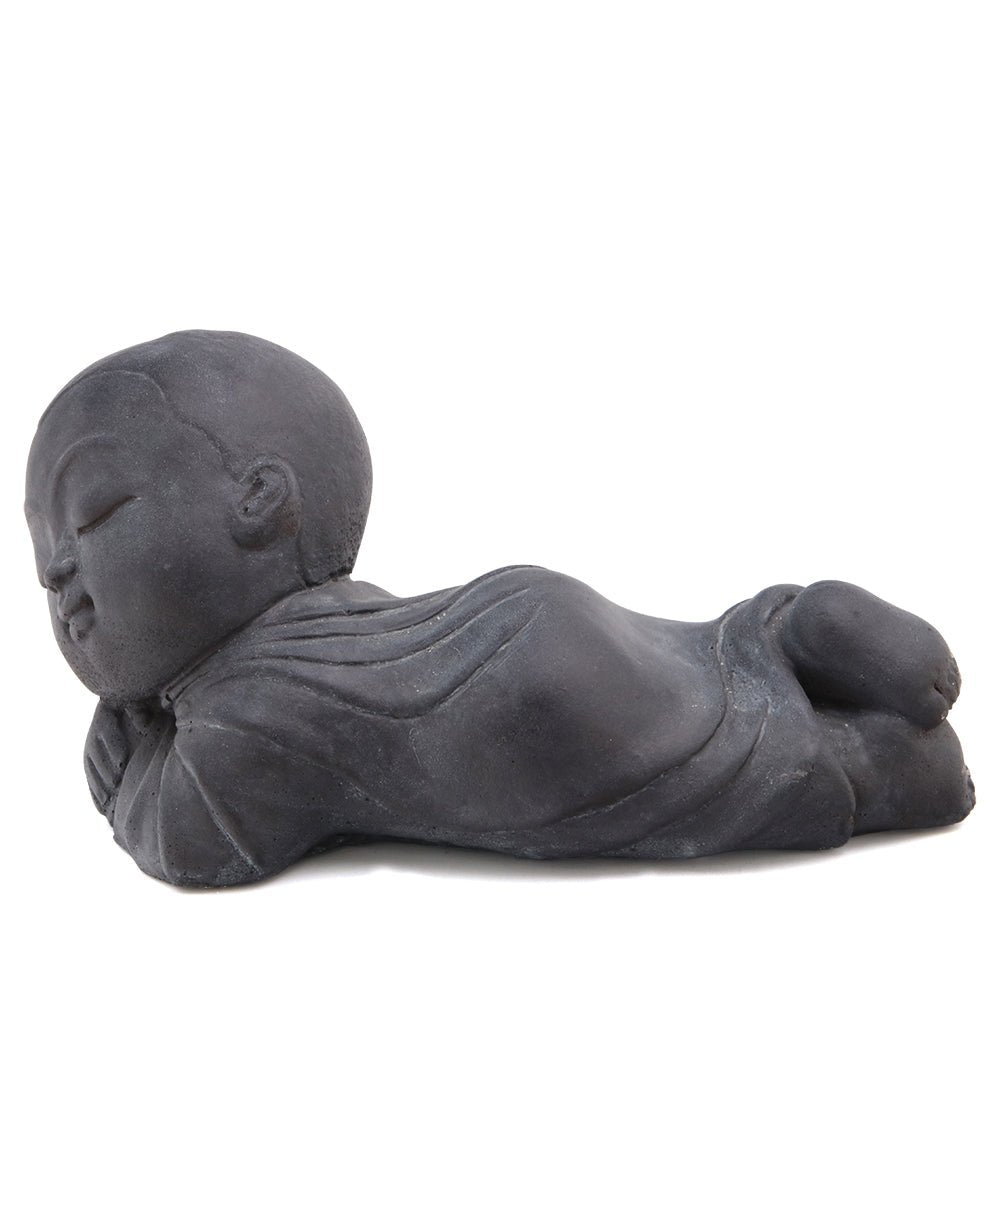 Resting Baby Monk Garden Statue, USA -